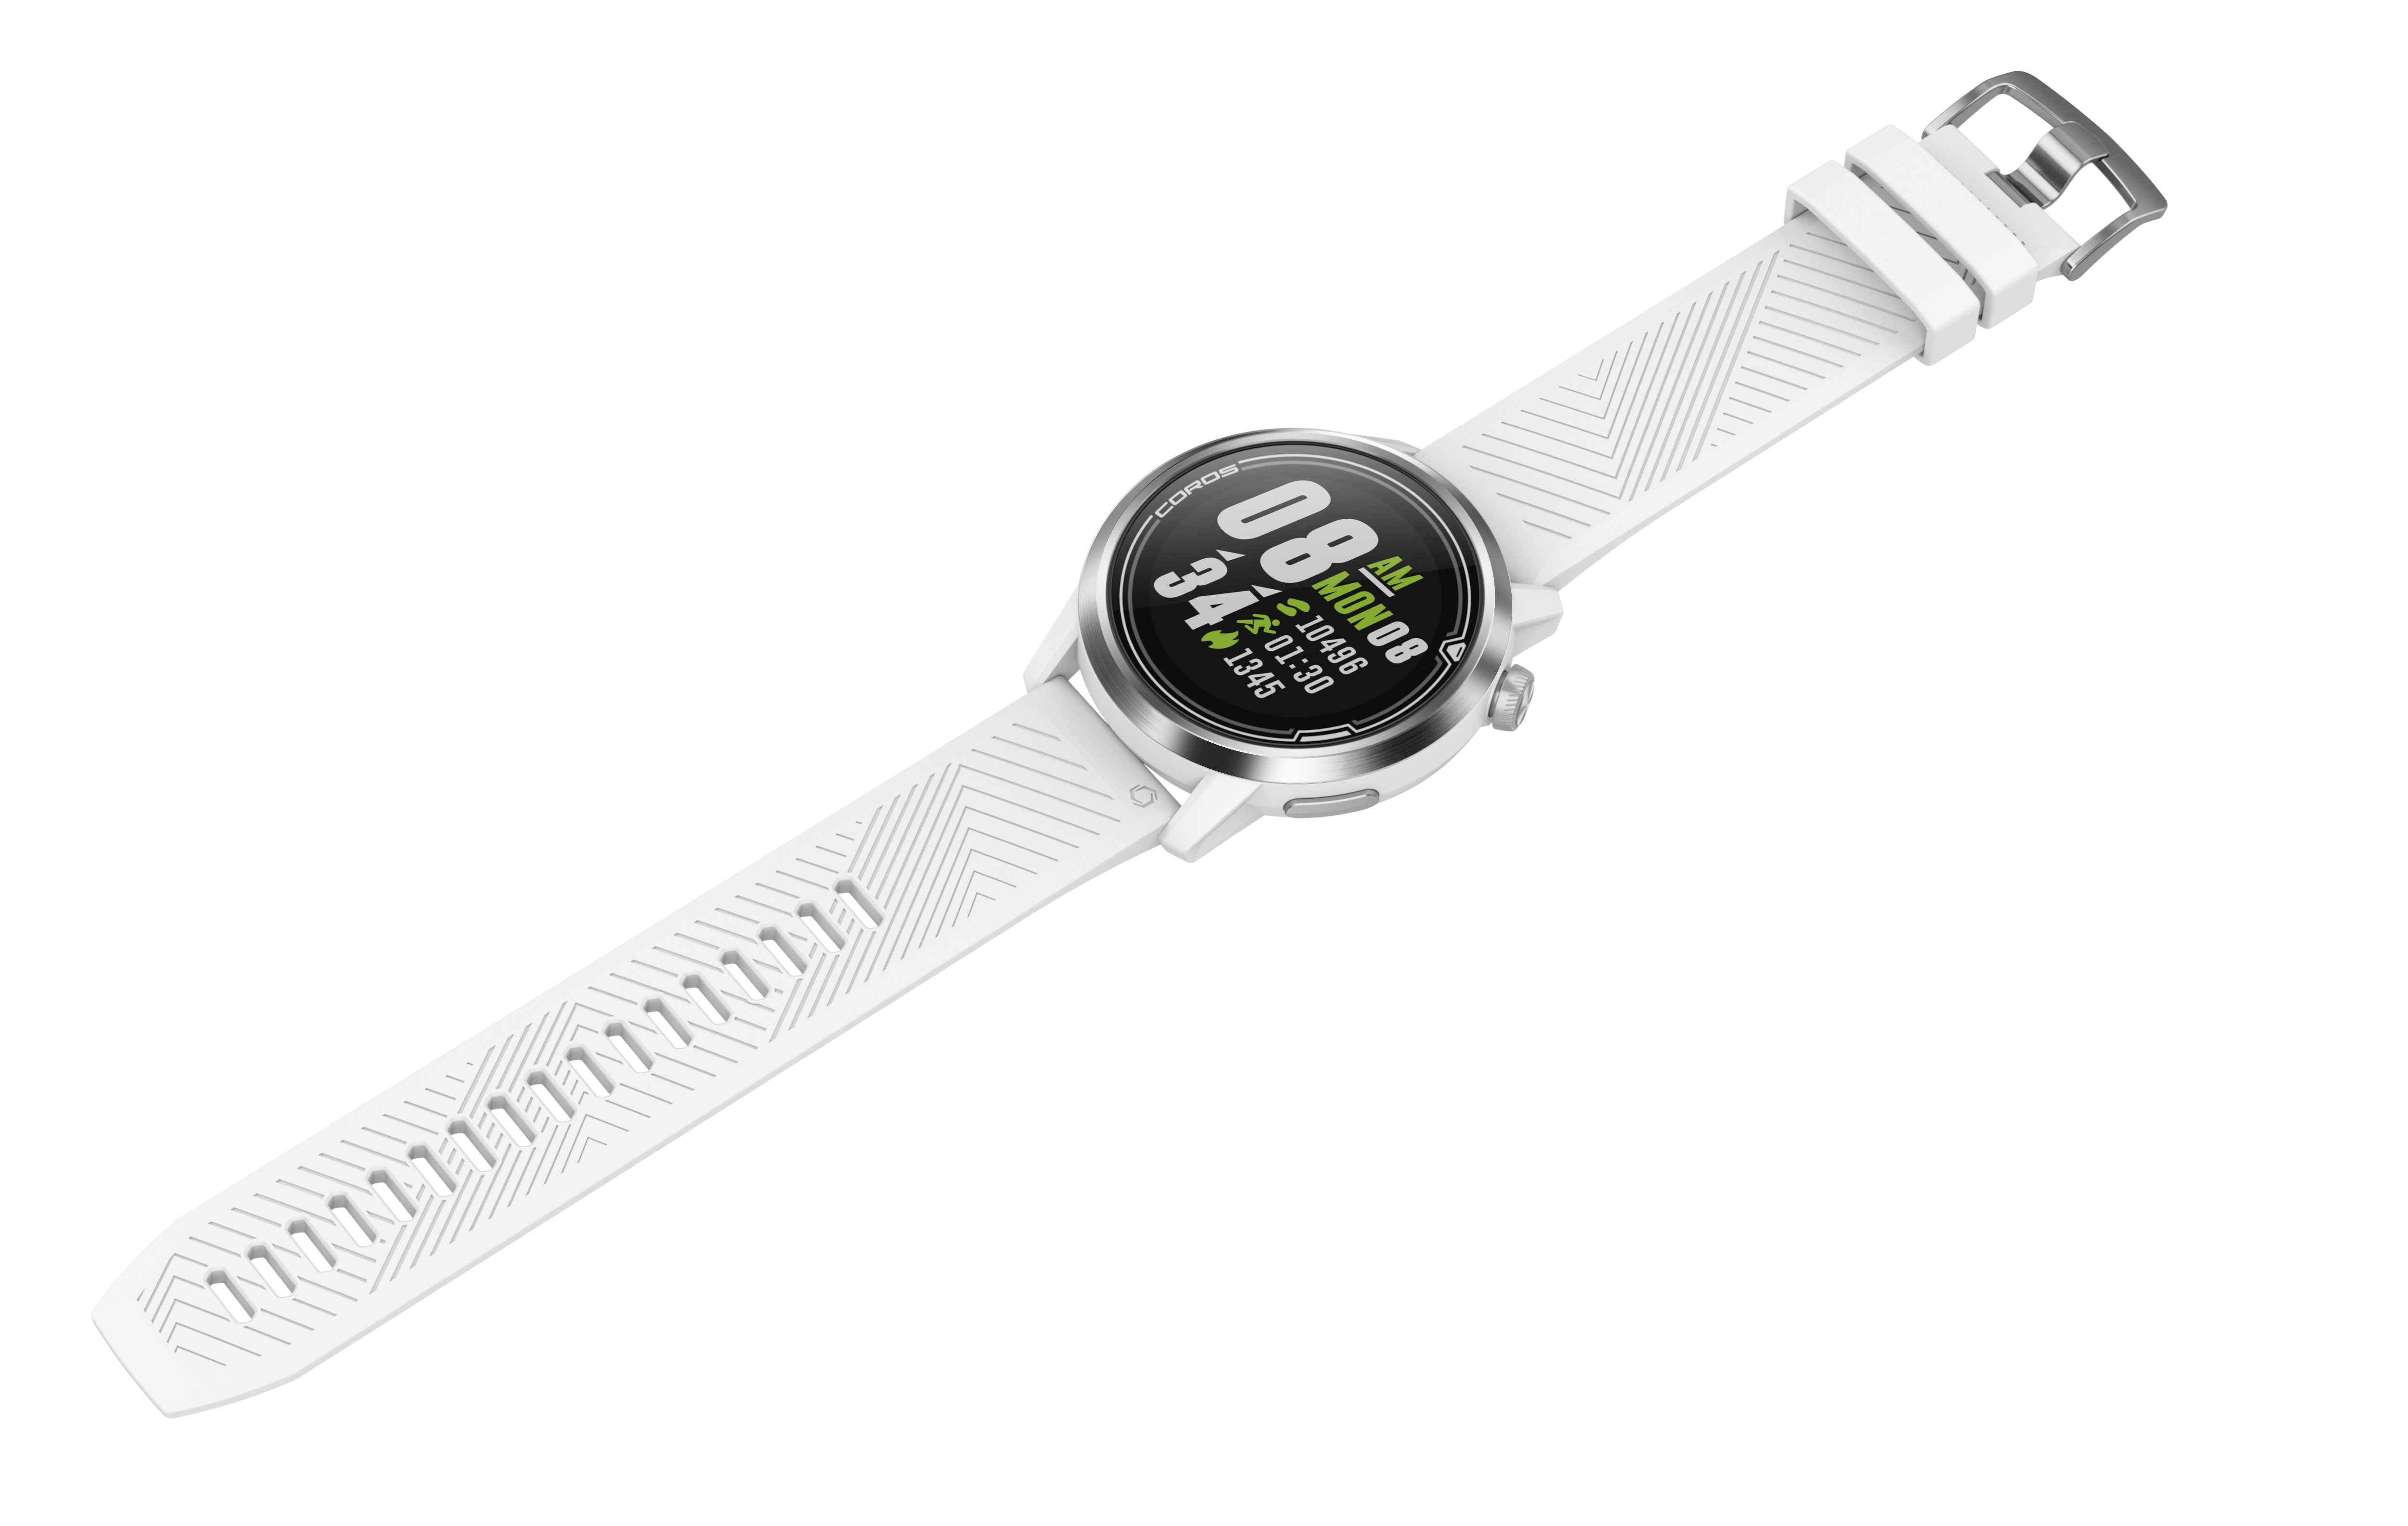 COROS APEX Premium GPS Multisport Watch